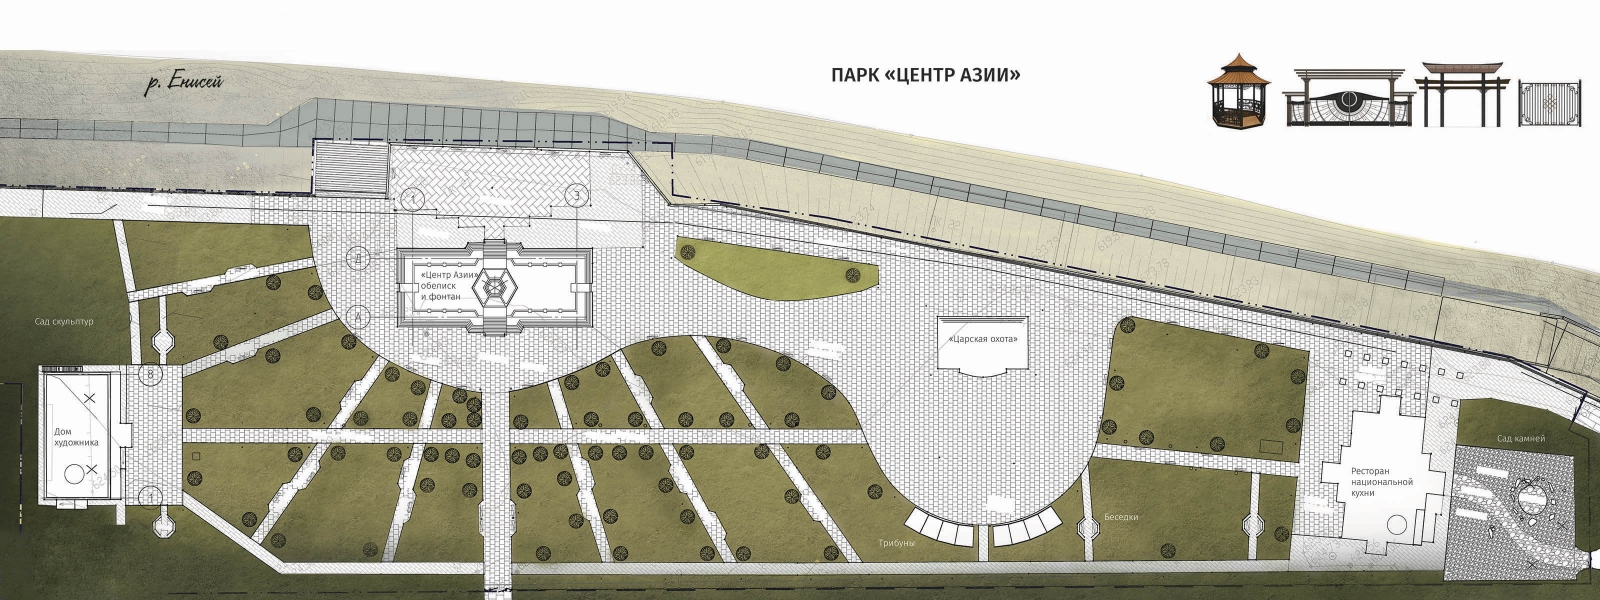 work-Реконструкция набережной р. Енисей в Кызыле (Республика Тыва)